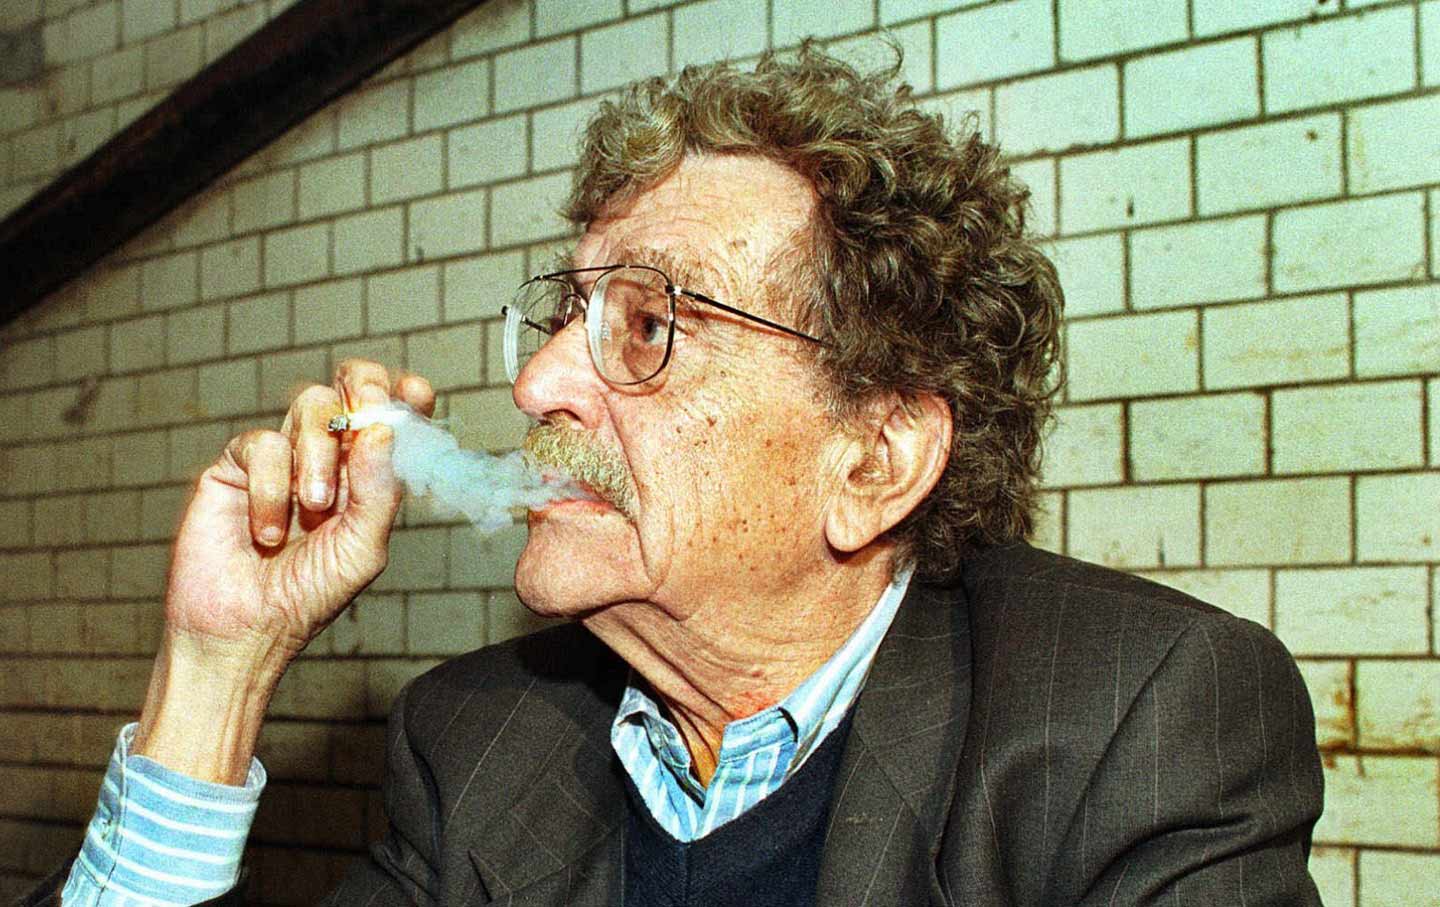 Kurt Vonnegut: el humor como respuesta a todo